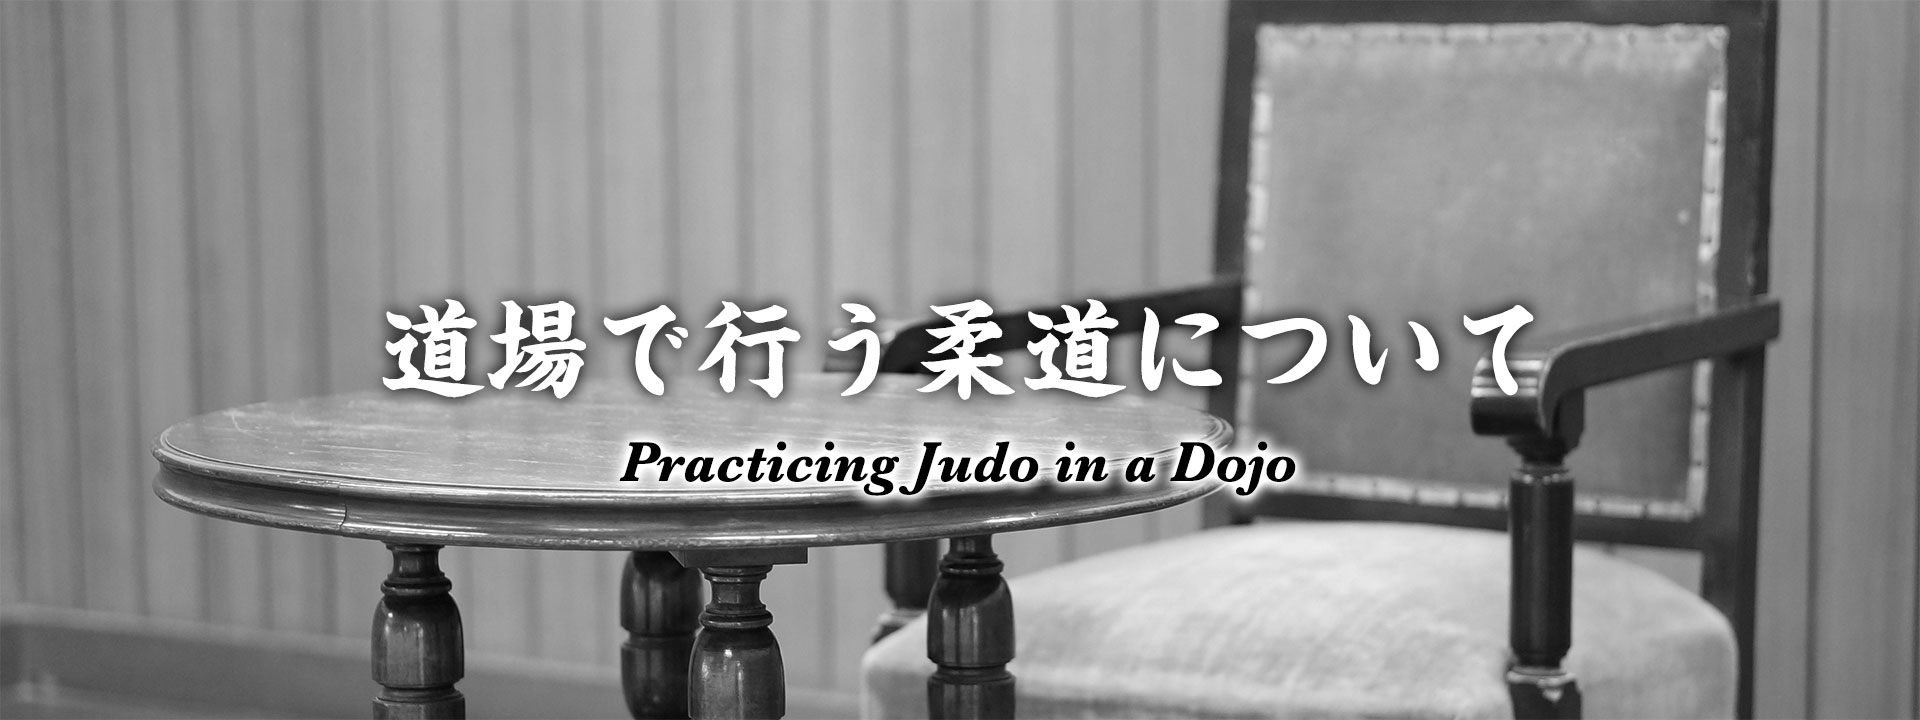 Practicing Judo in a Dojo